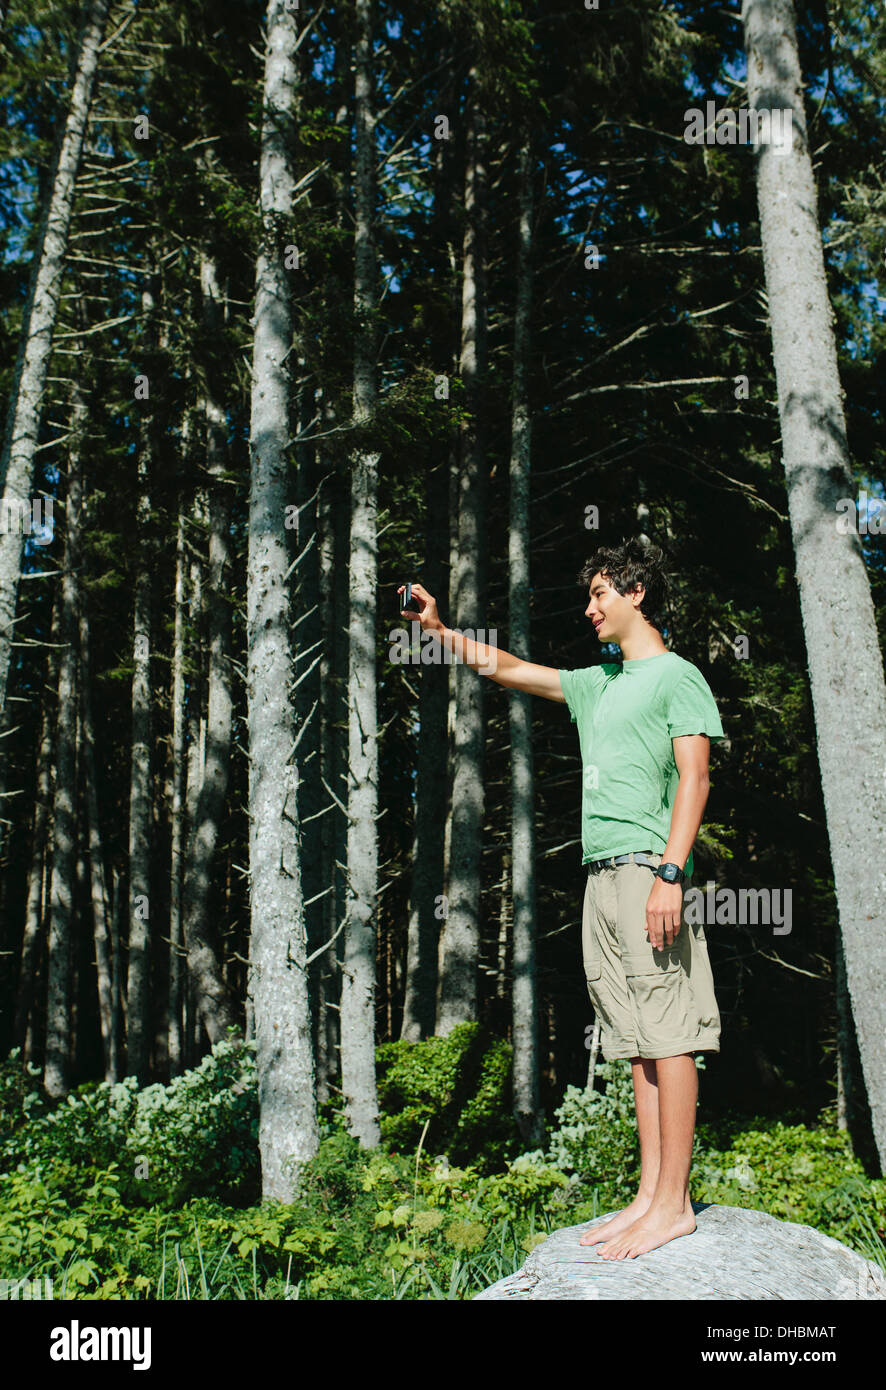 Un giovane ragazzo che sta nella foresta in possesso di una smart phone fino a prendere un selfy o una fotografia, nel parco nazionale di Olympic. Foto Stock